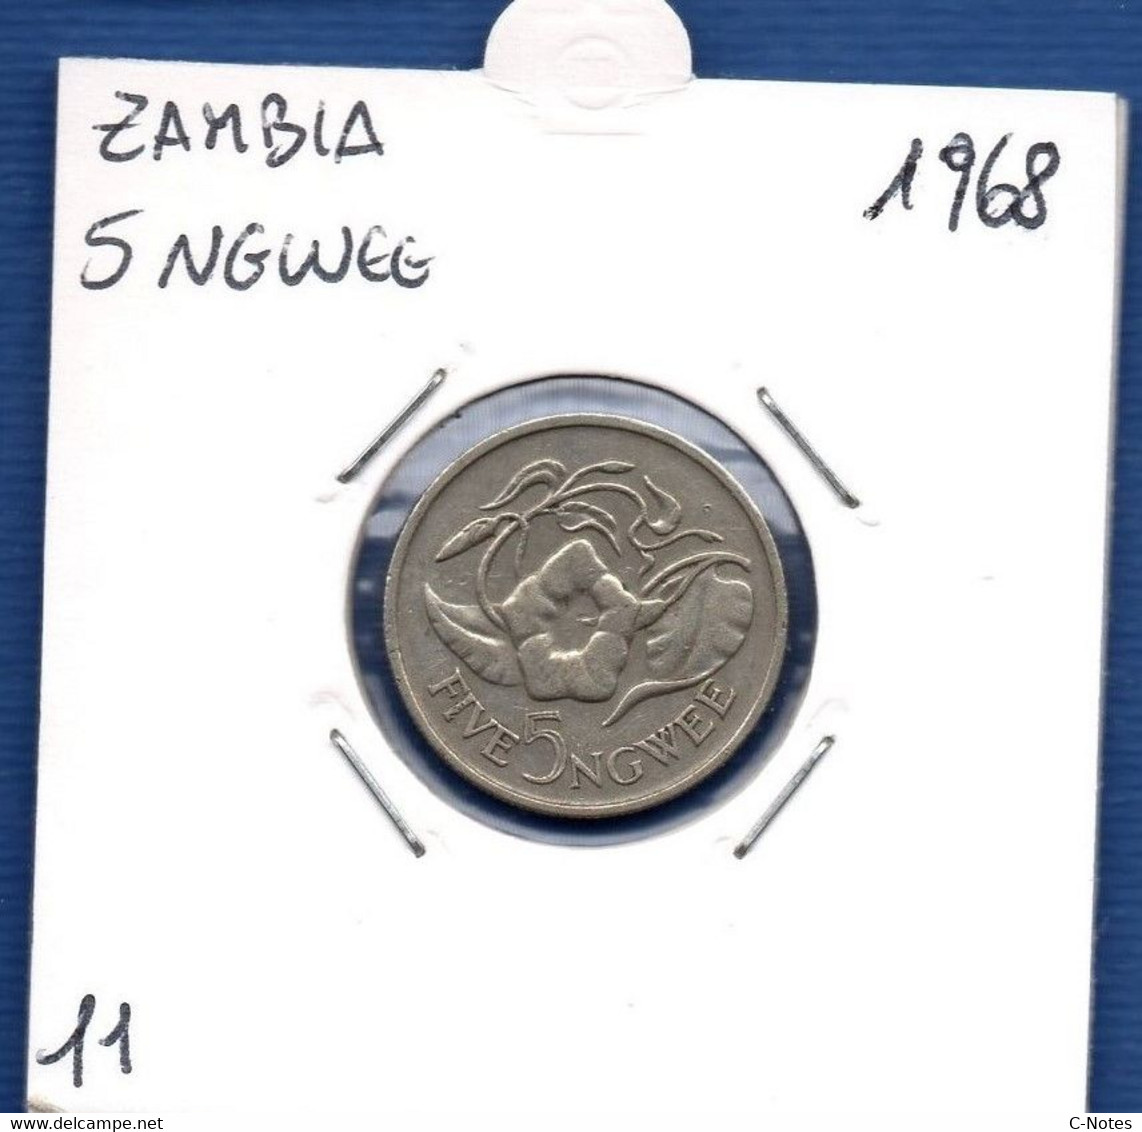 ZAMBIA - 5 Ngwee 1968 - See Photos - Km 11 - Zambia